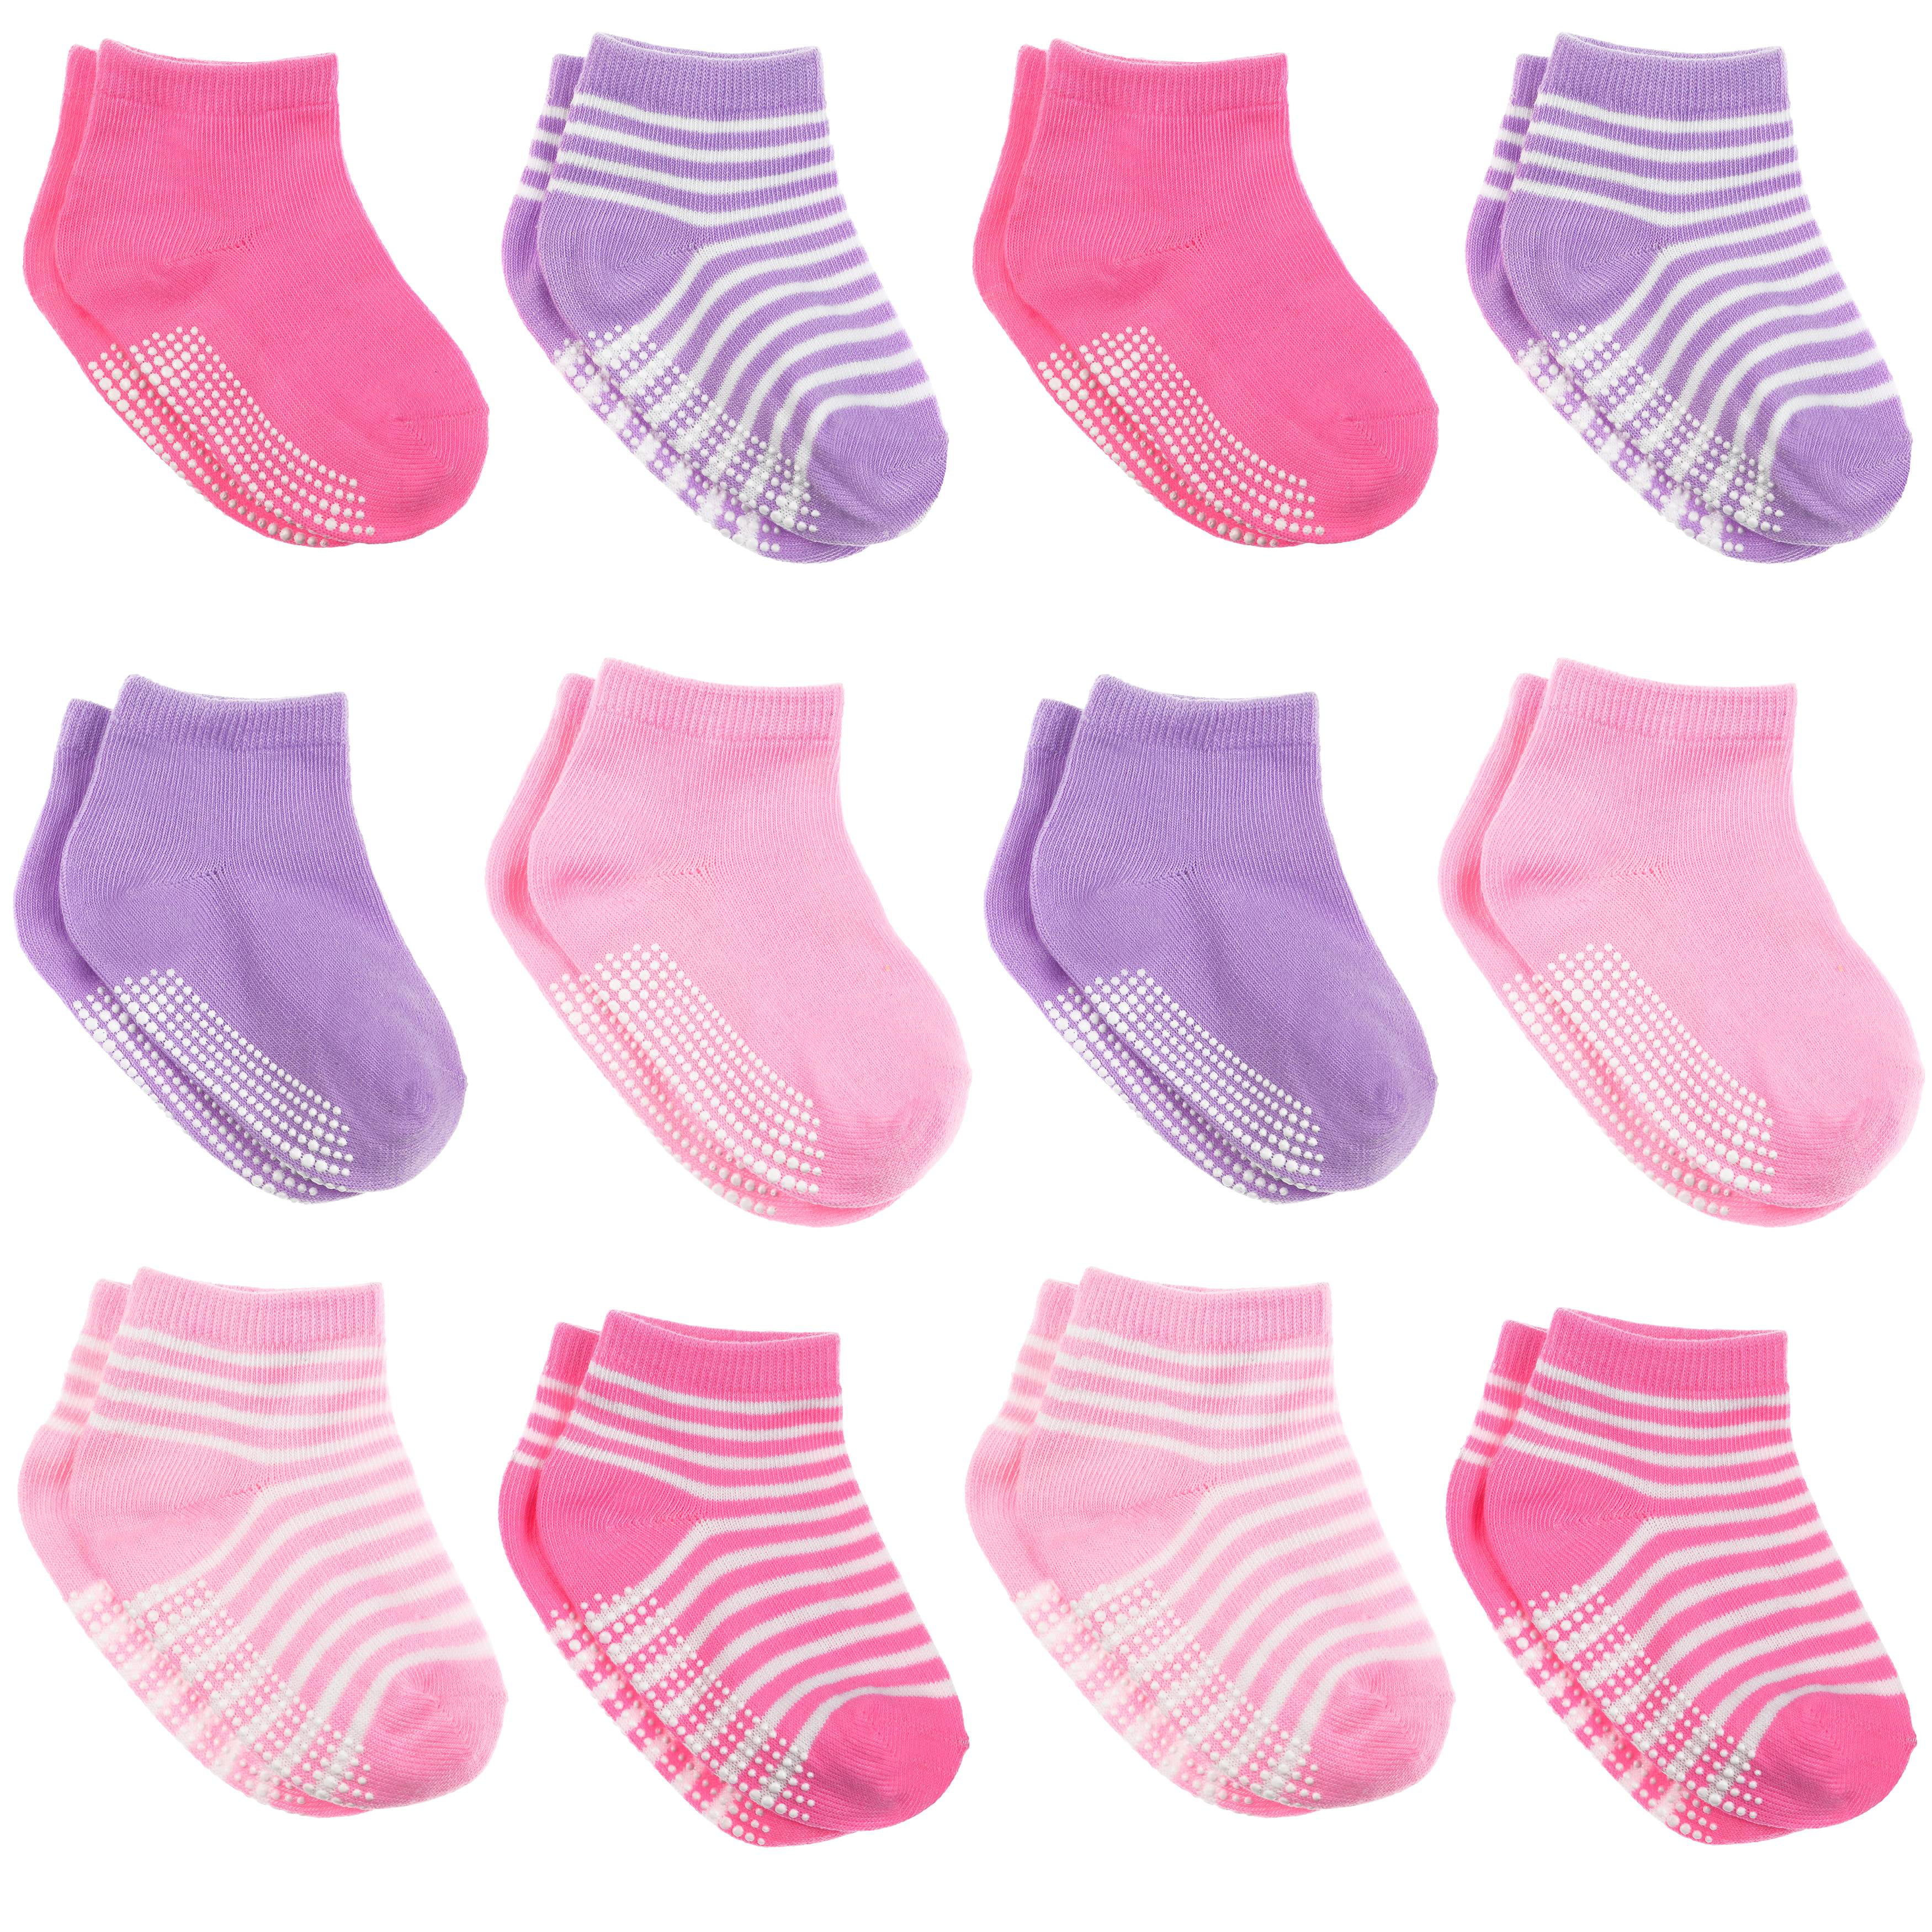 WELMOR Baby Toddlers Anti Skid Grip Ankle Socks for Infant Newborn Kids Boys Girls-6&12 Pack